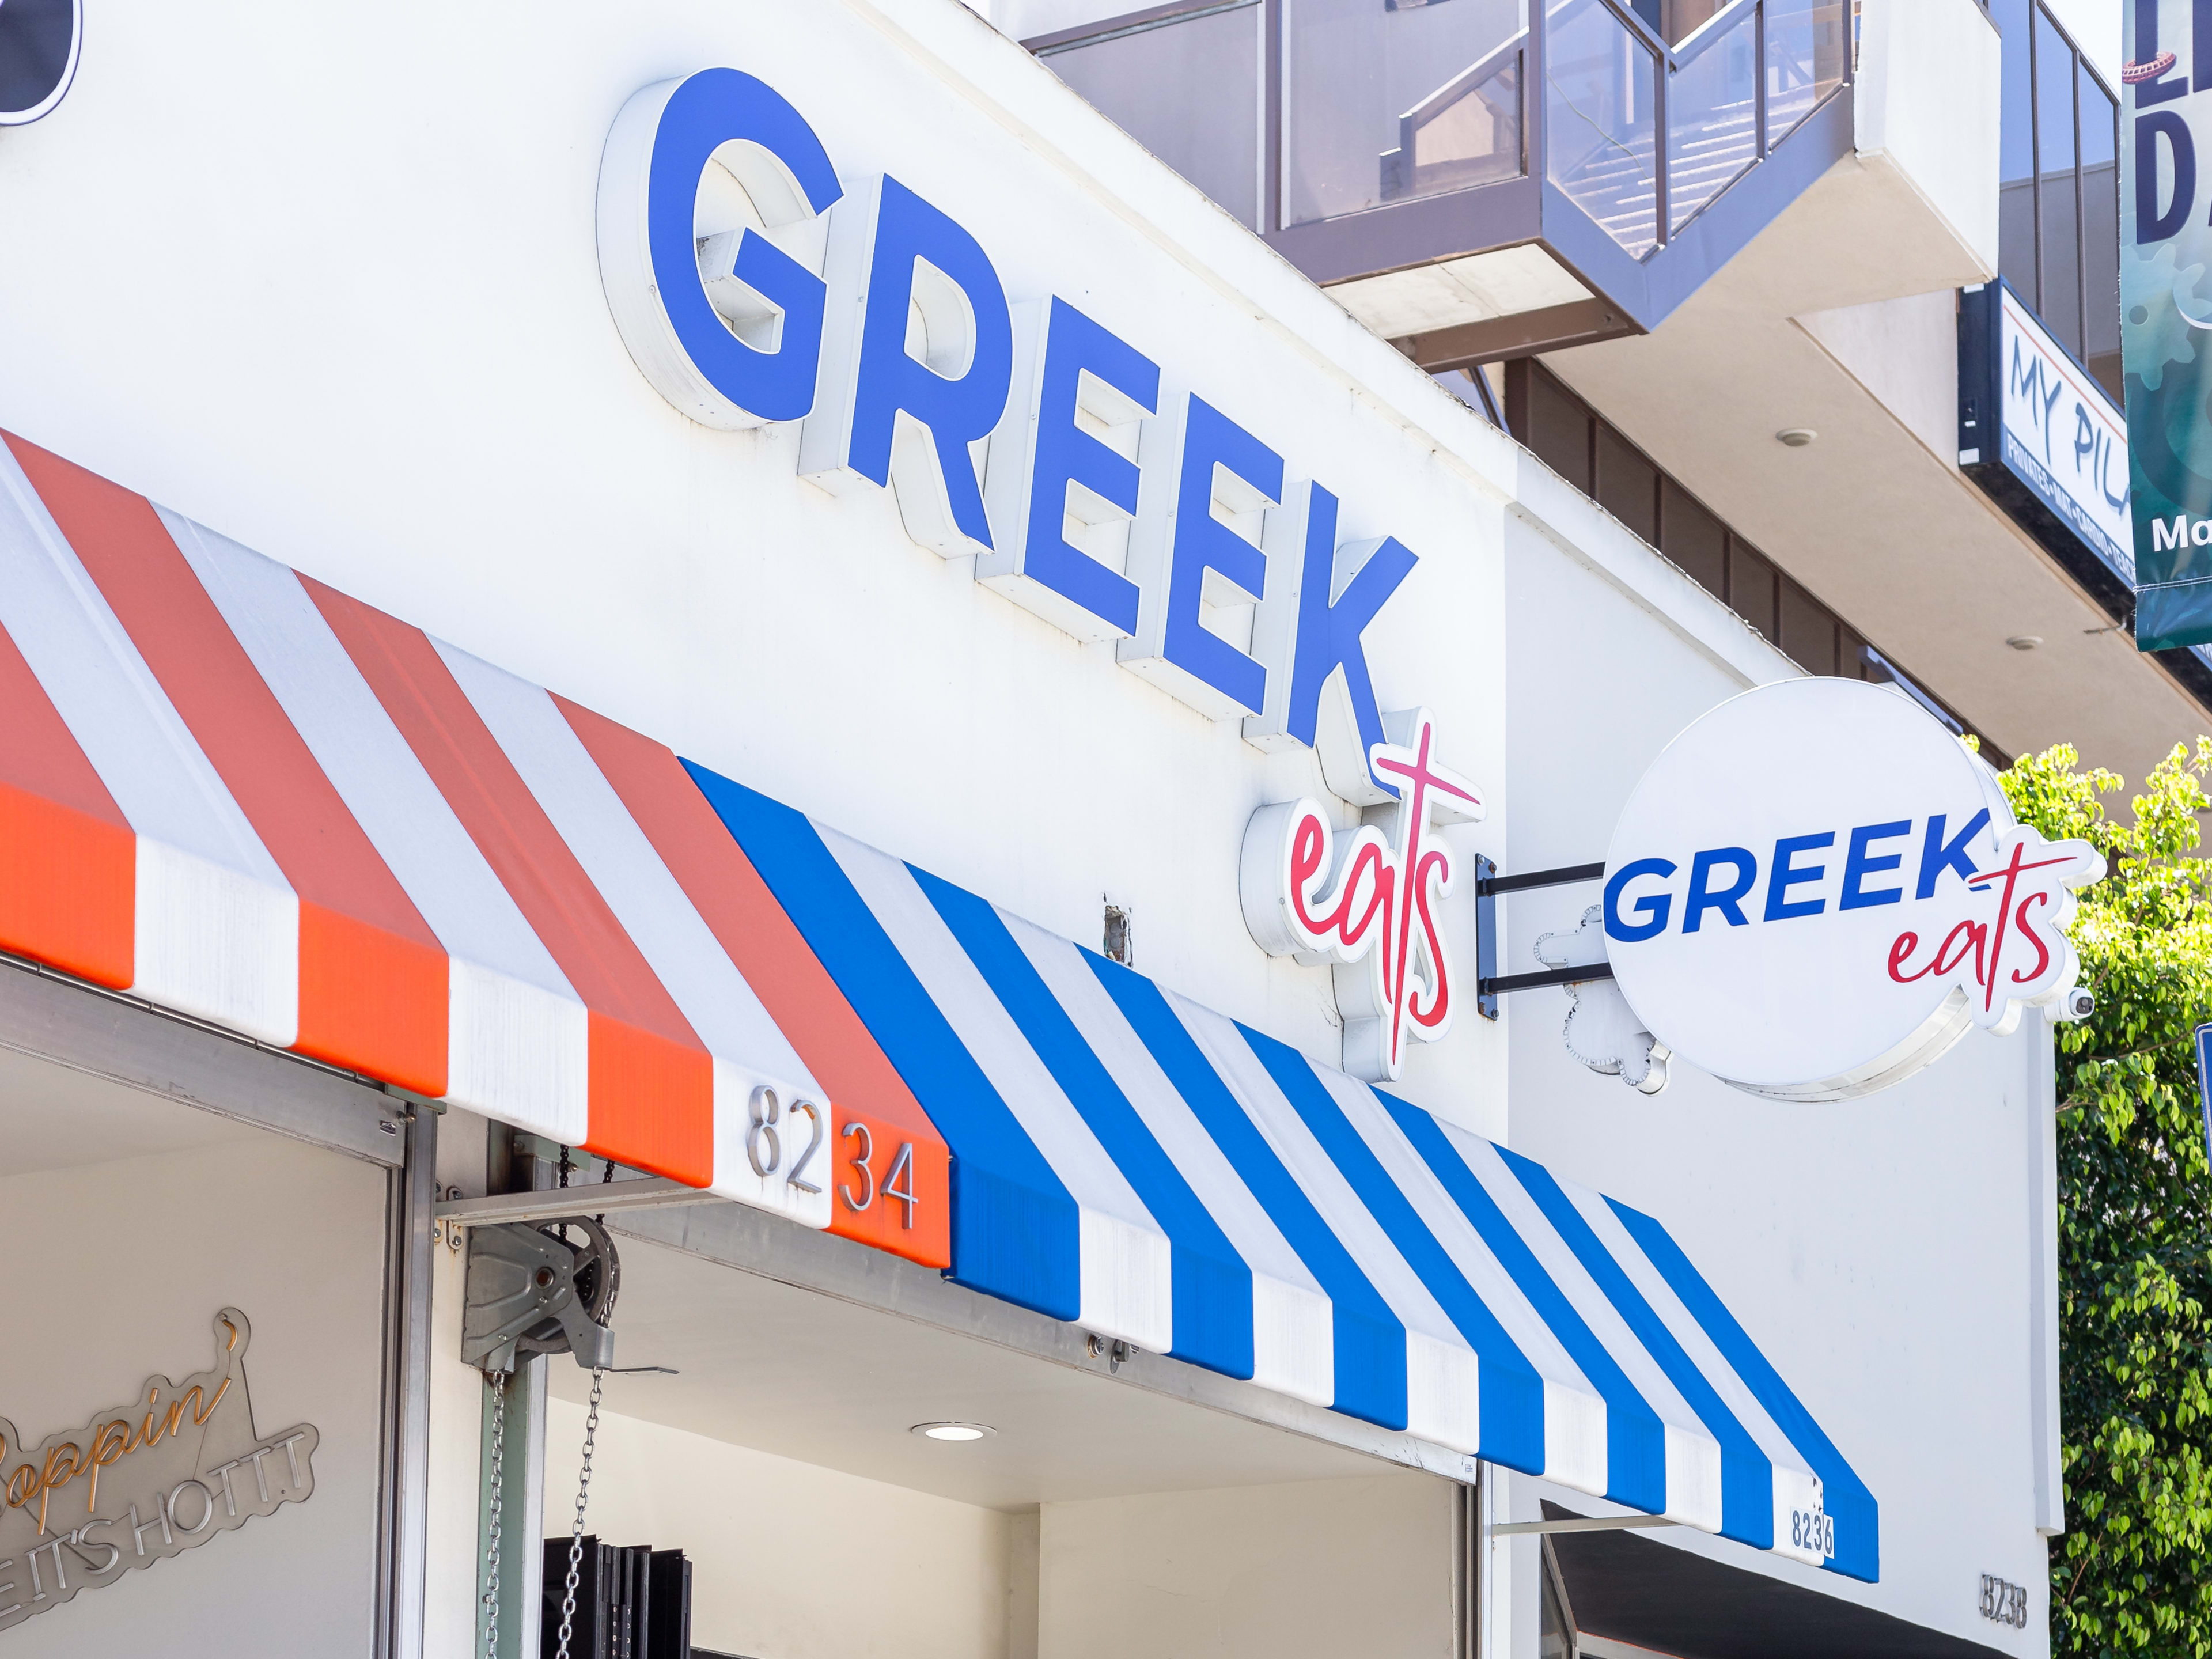 Greek Eats Exterior